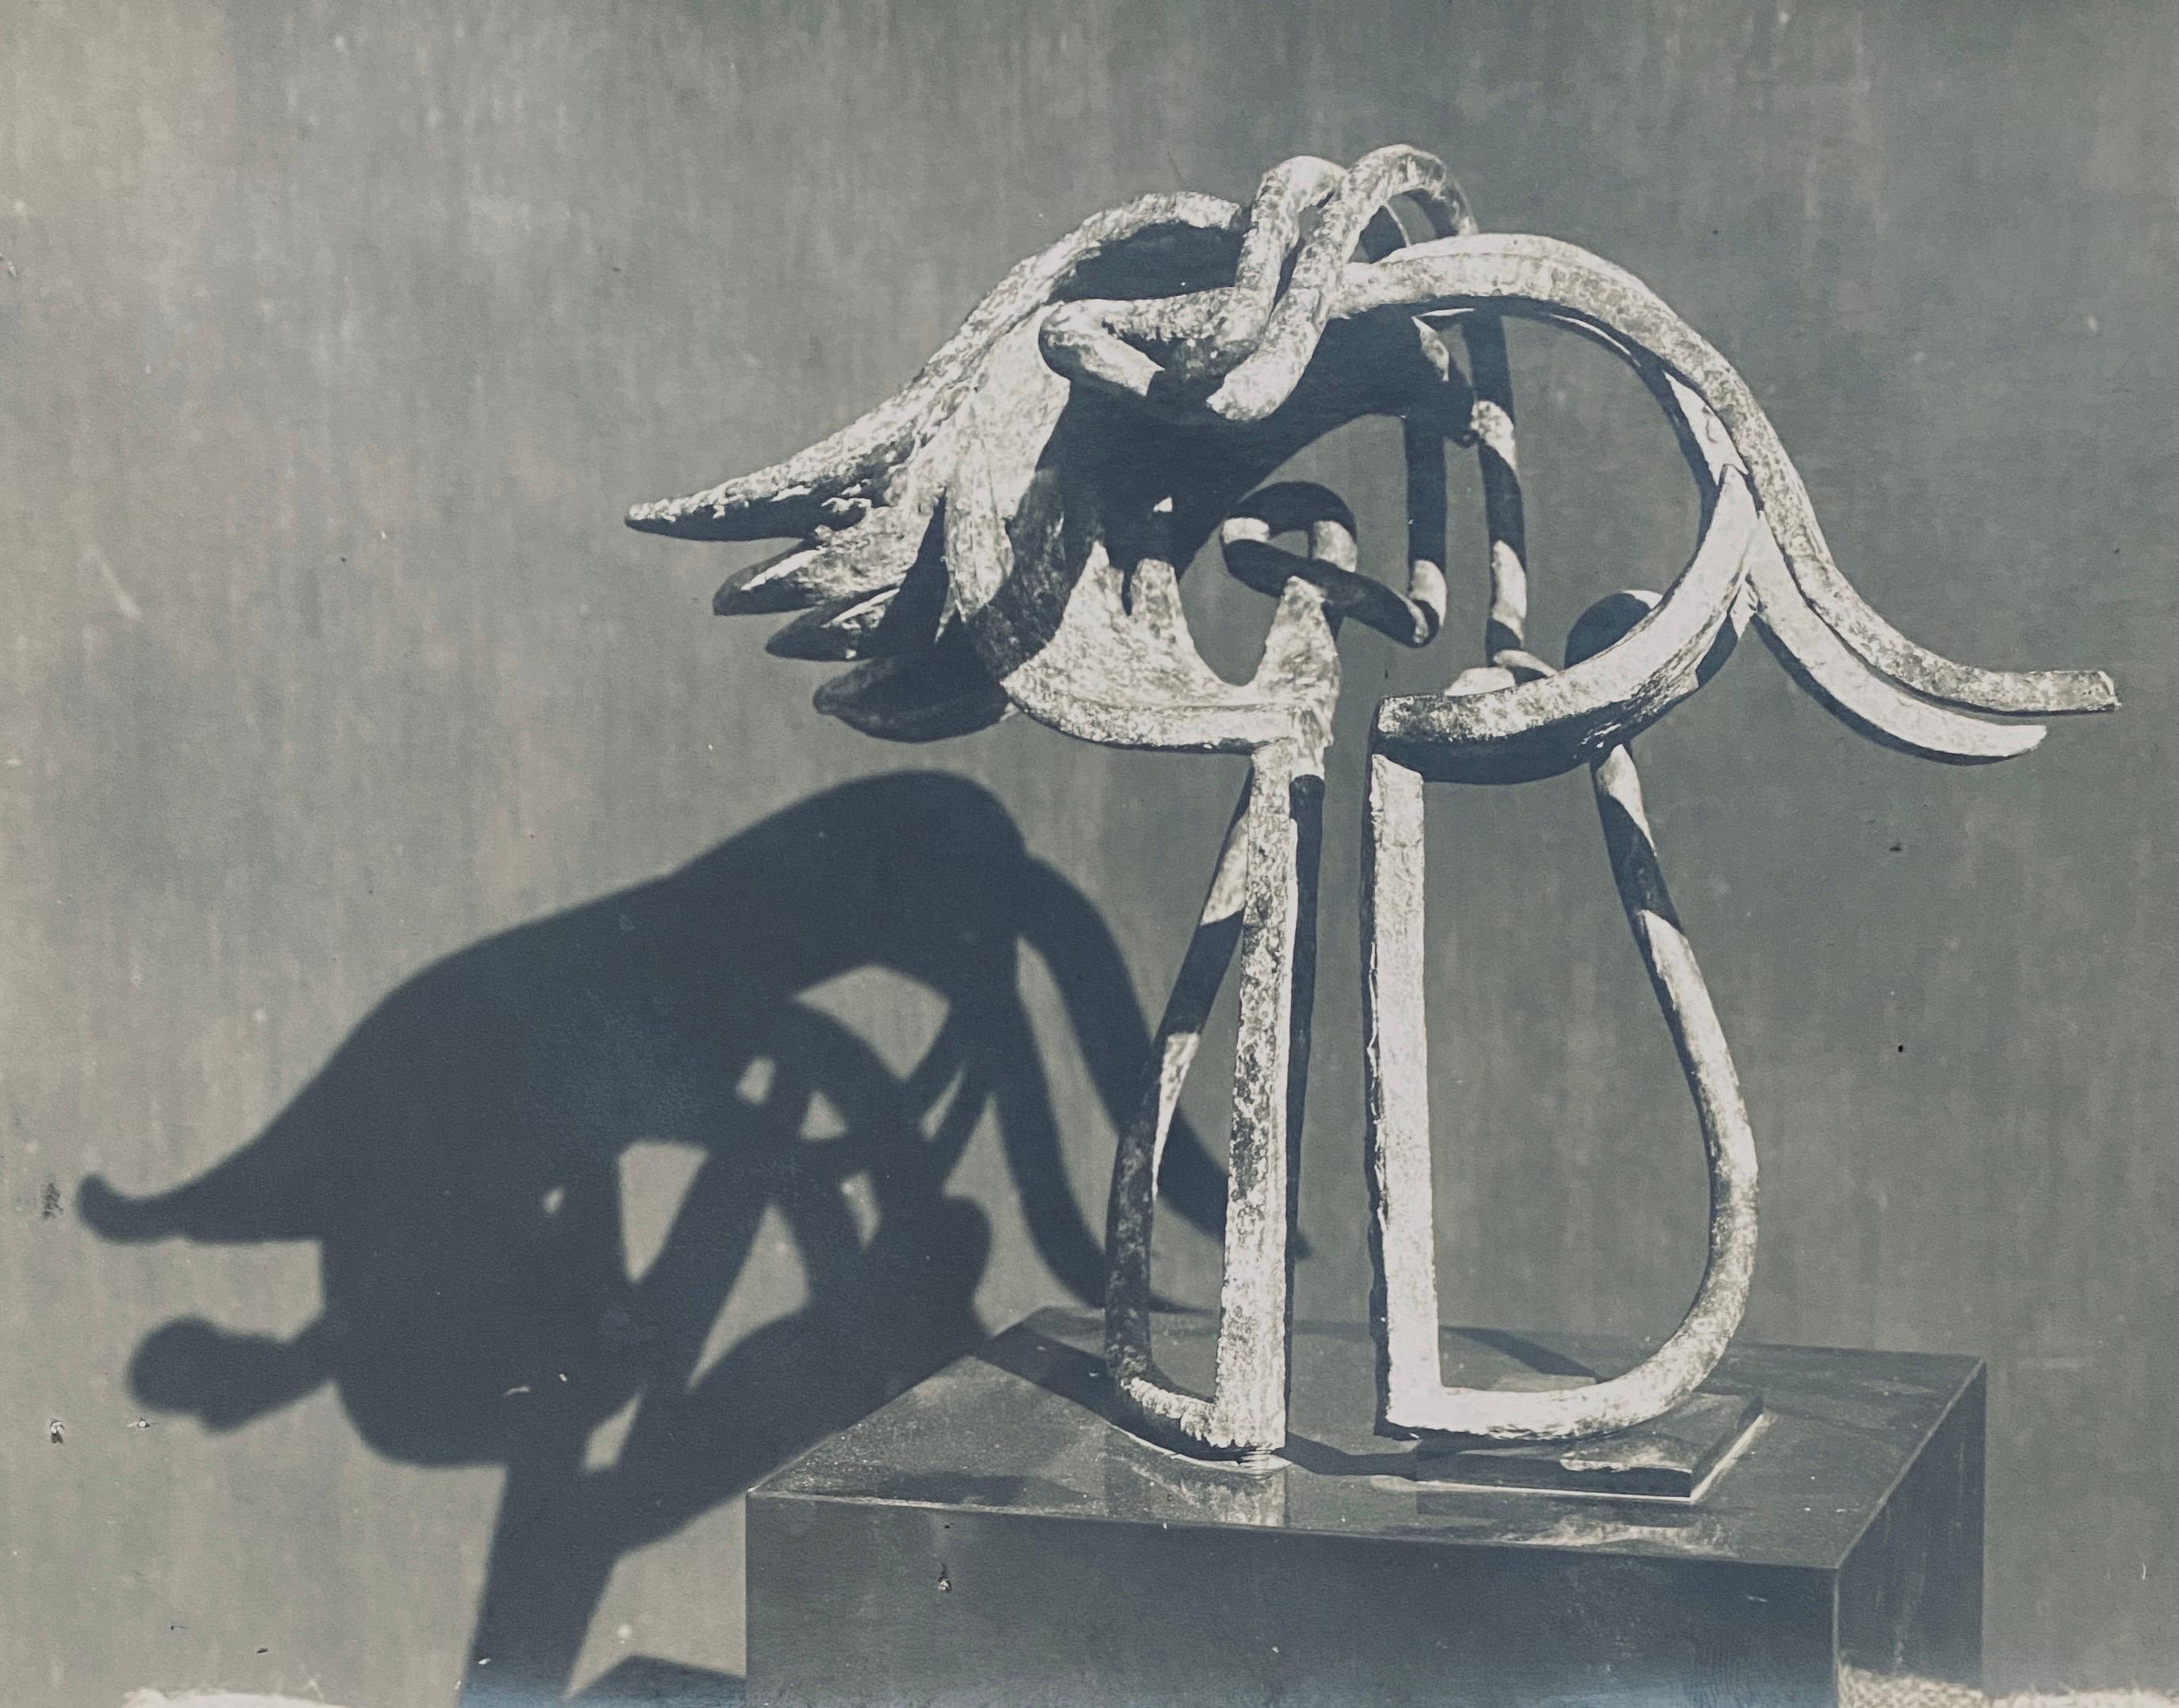 Marc Vaux, une figure de Montparnasse, a produit une multitude de photographies qui sont actuellement conservées dans la collection du Centre Pompidou à Paris, en France. Marc Vaux s'engage également à soutenir les artistes, notamment en créant le